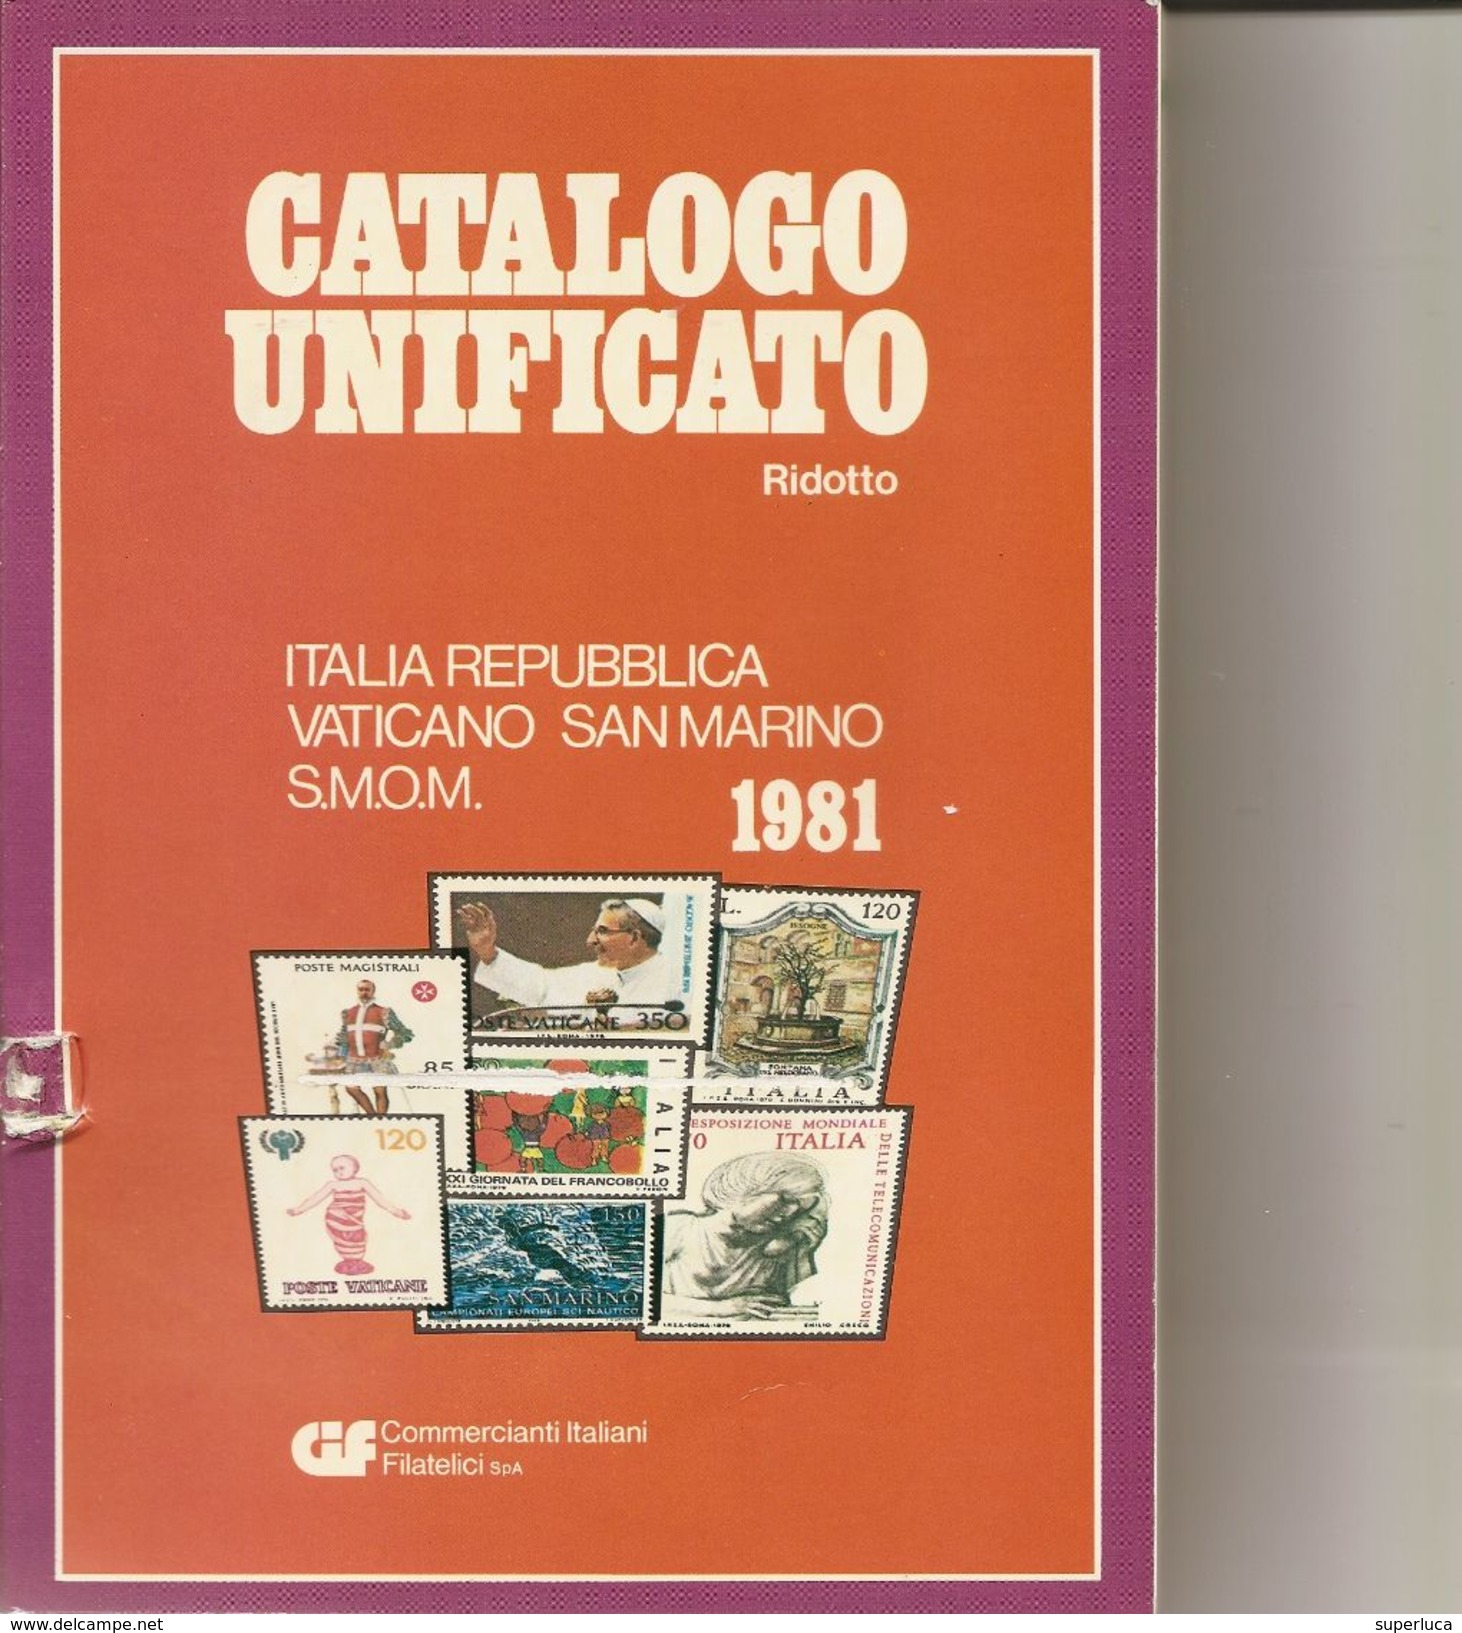 2-CATALOGO BOLAFFI 1967-FRANCOBOLLI ITALIANI+CATALOGO UNIFICATORIDOTTO 1981(OMAGGIO) - Italien